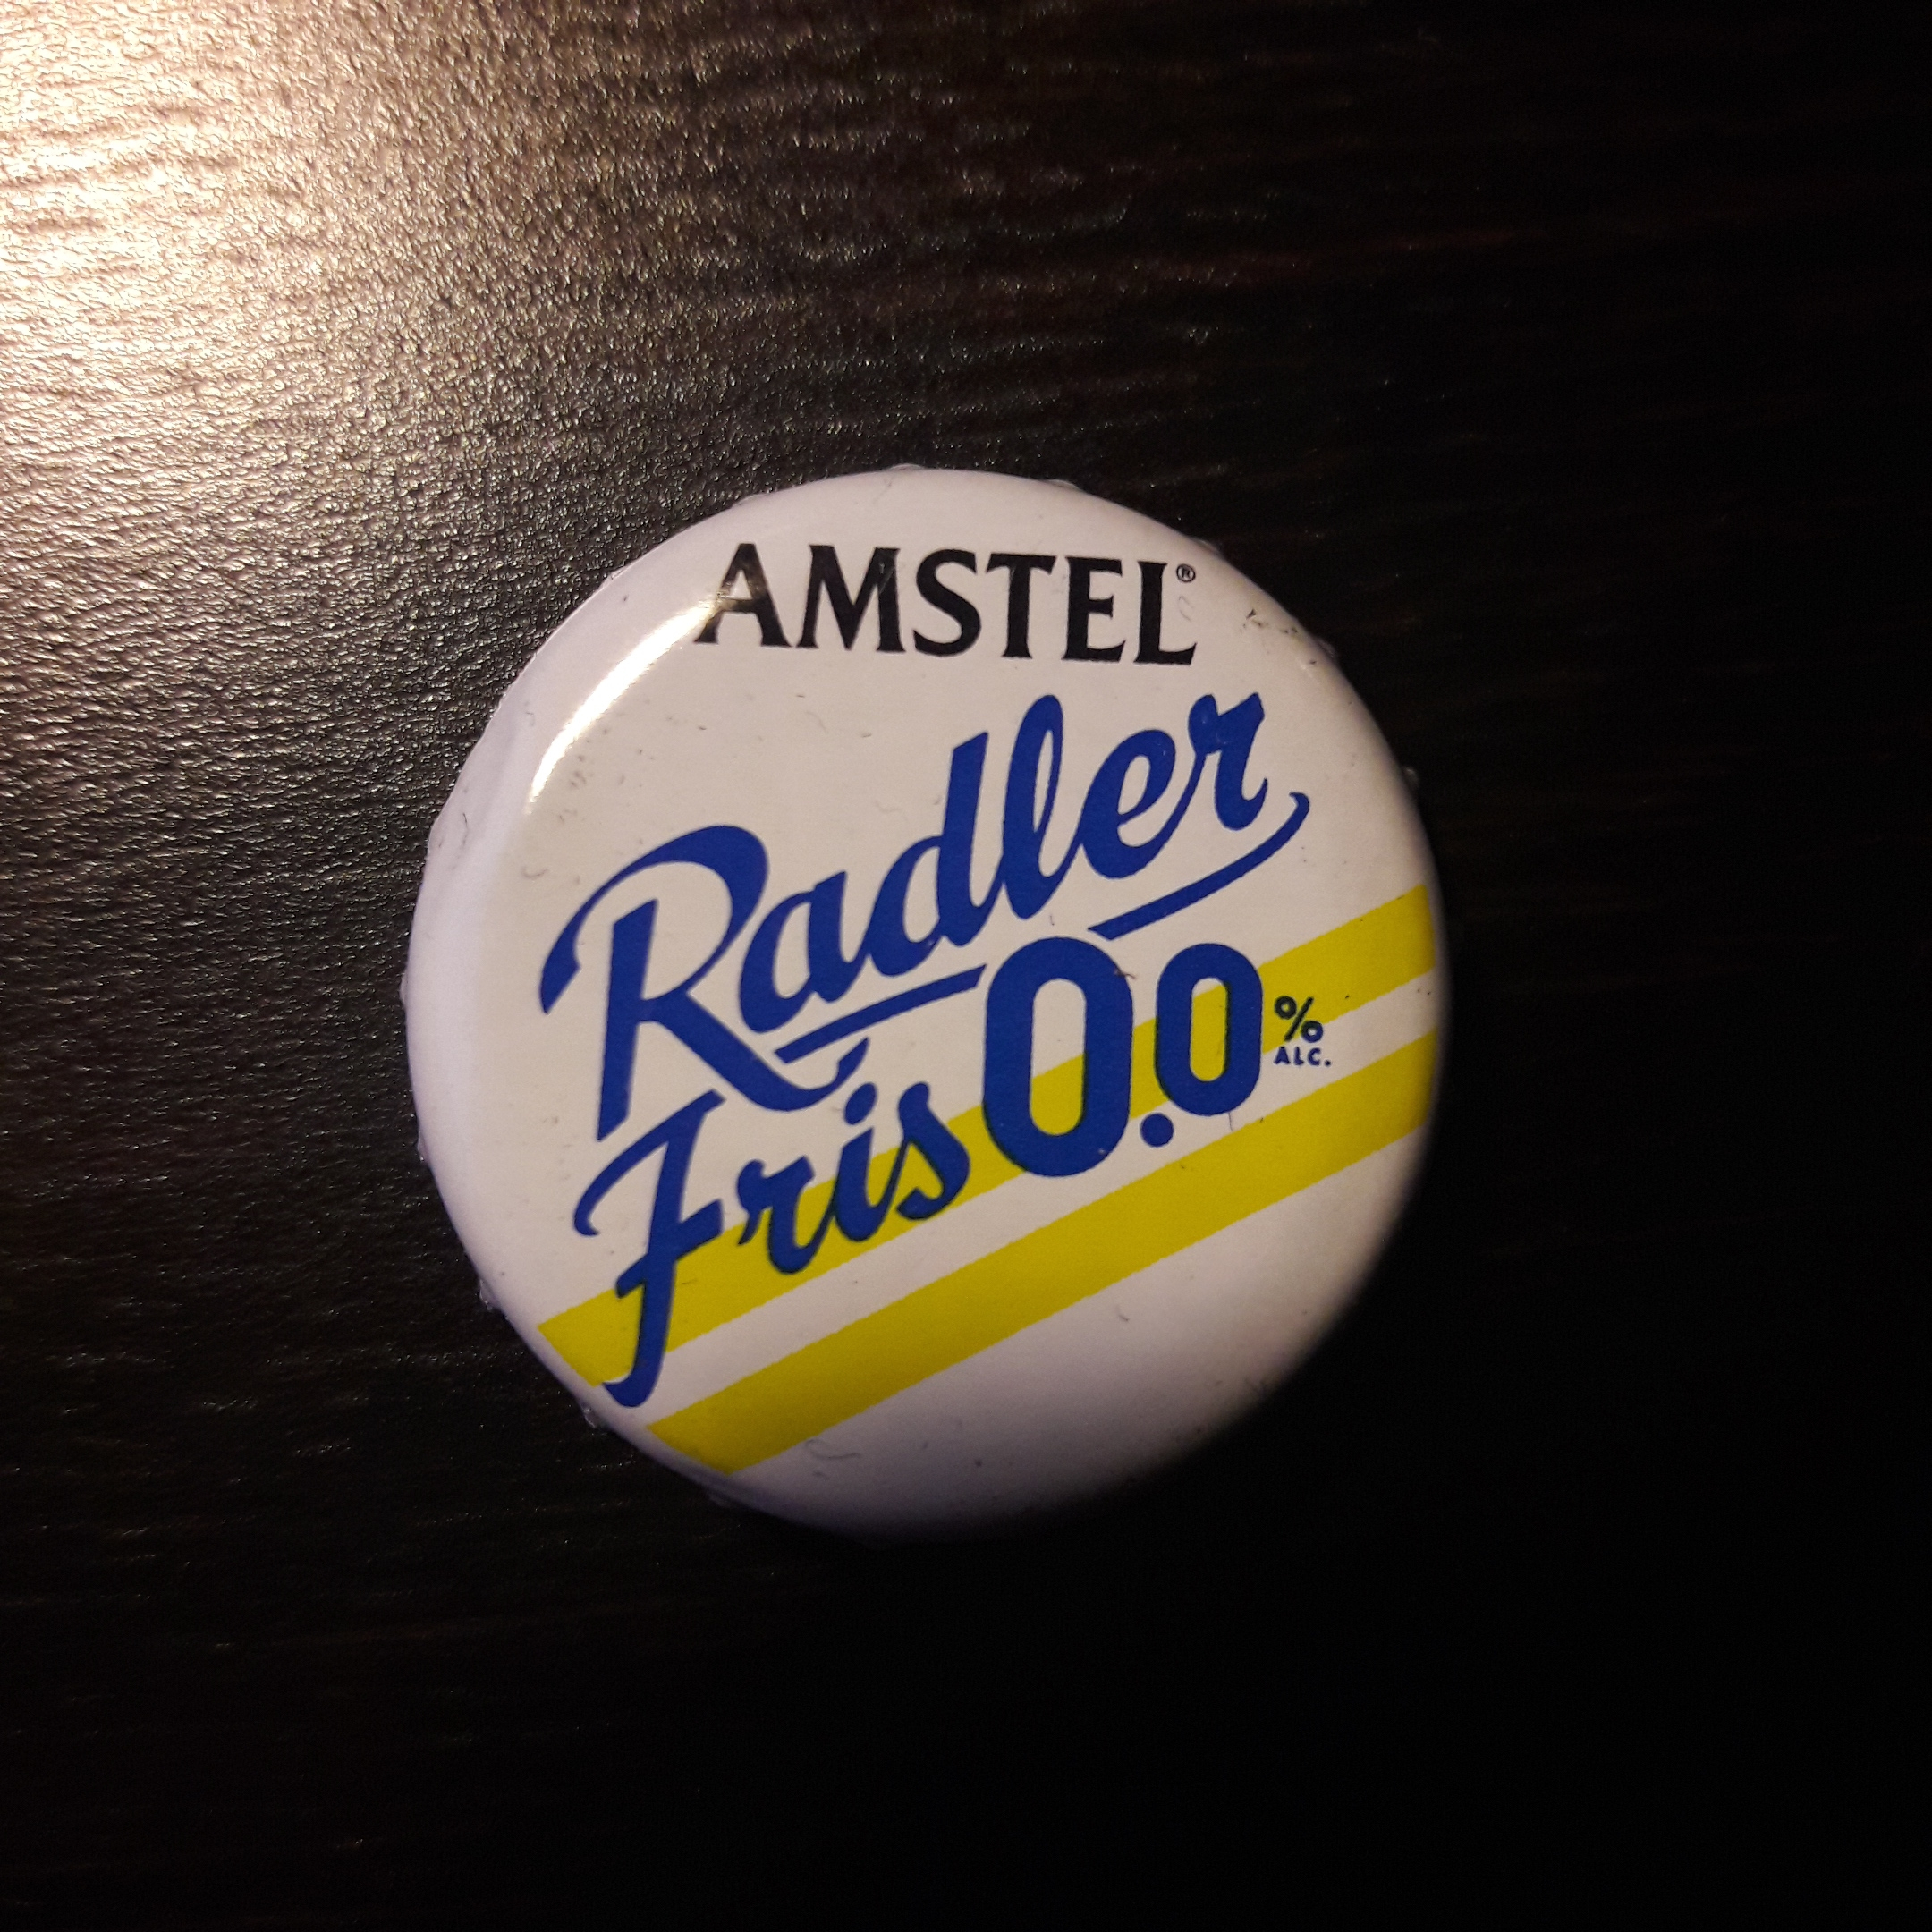 Amstel Radler fris 0,0%